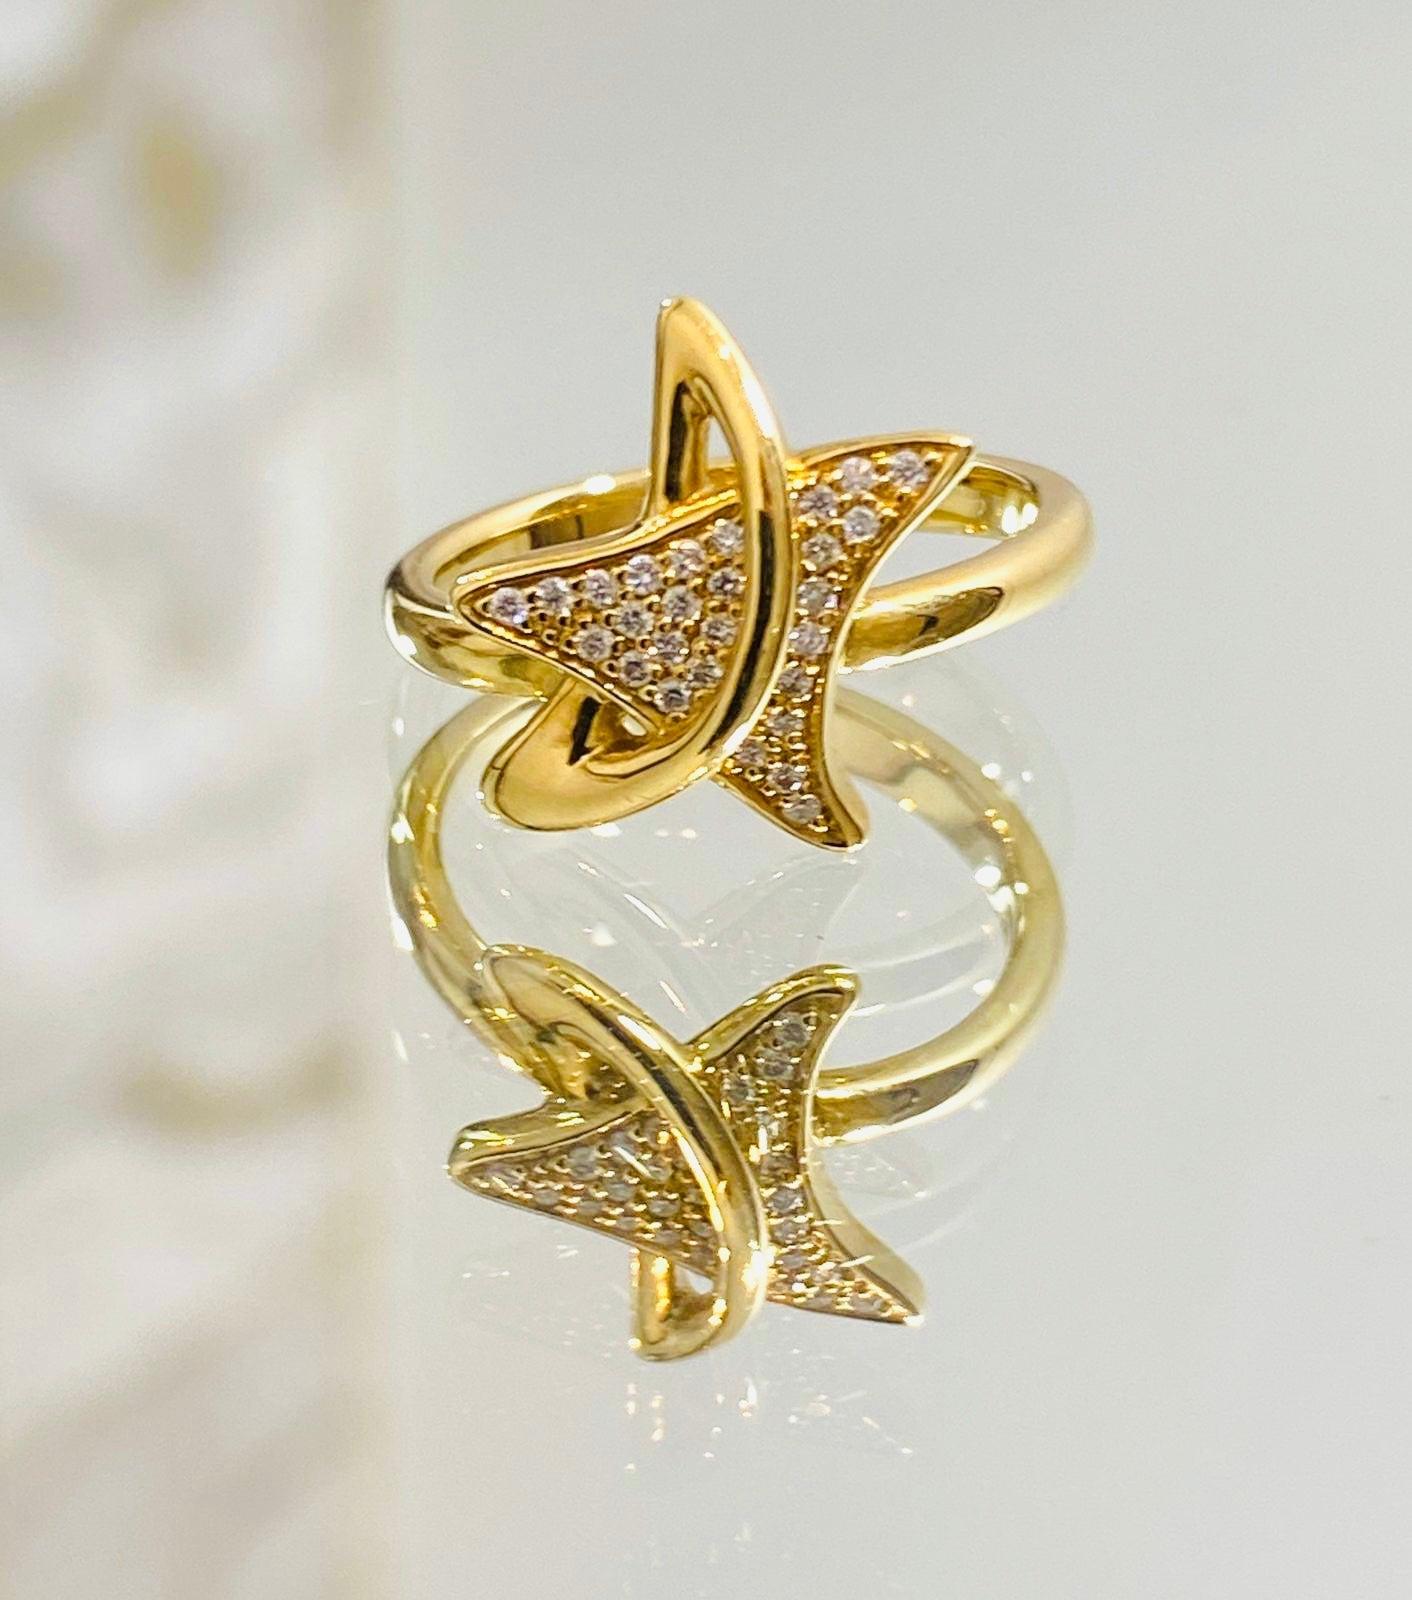 18k Gold & Diamant Stern Ring.

Sternförmiges Design, besetzt mit weißen Brillanten. 18 Karat Gelbgold.

Zusätzliche Informationen:
Größe - 52EU
Zustand - Sehr gut (leichte Kratzer)
Zusammensetzung - Diamant, 18k Gold
Mitgeliefert - Eine Box